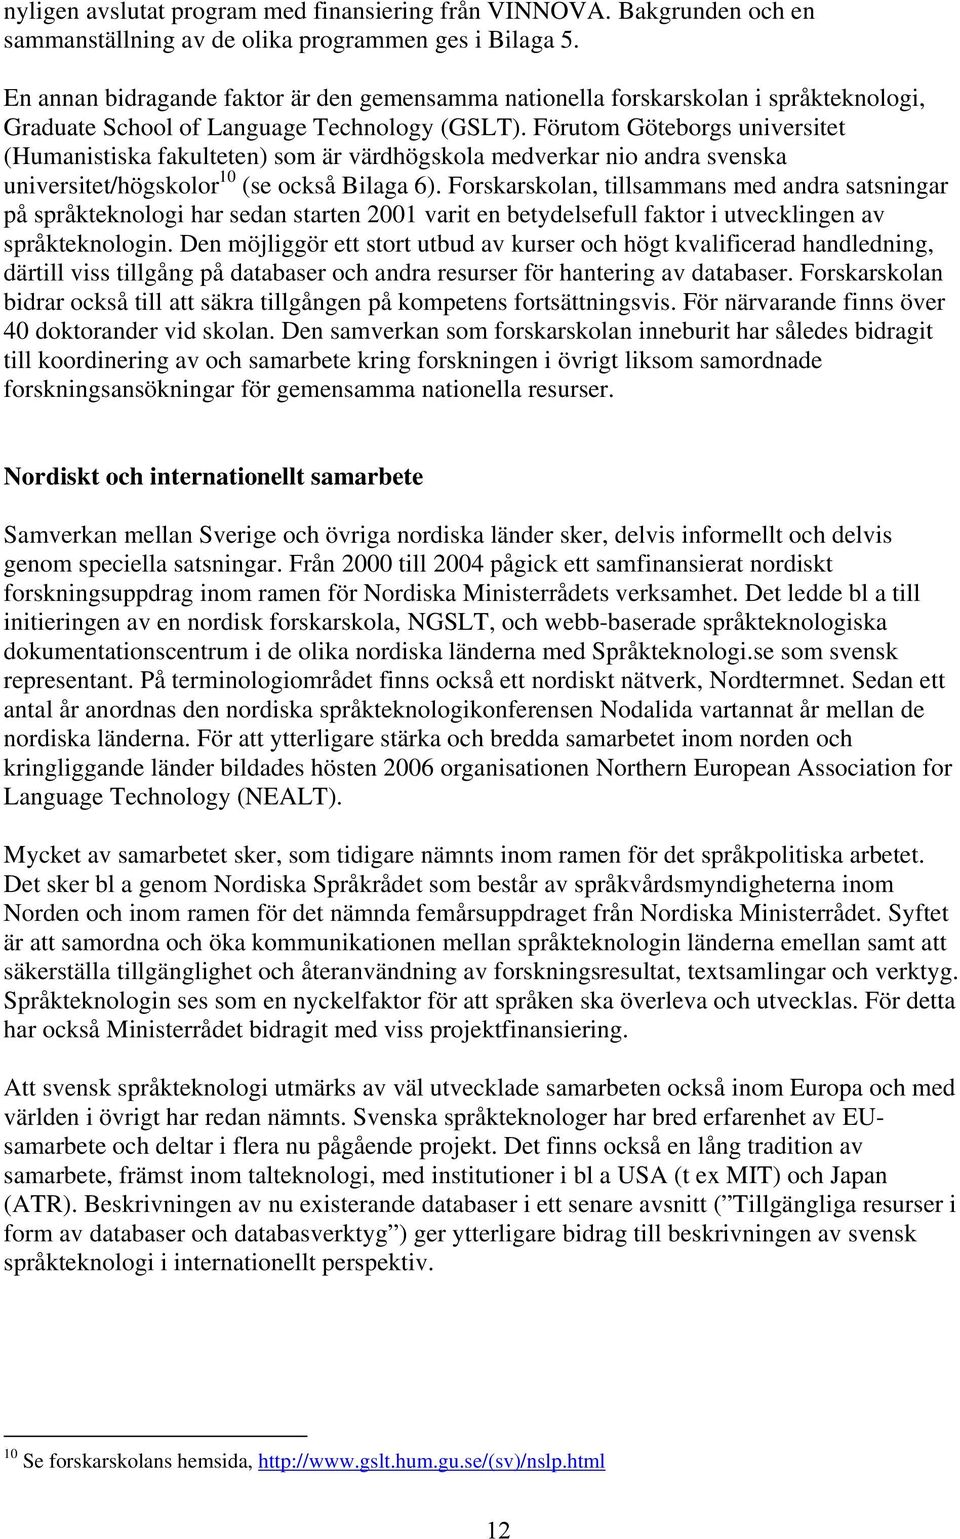 Förutom Göteborgs universitet (Humanistiska fakulteten) som är värdhögskola medverkar nio andra svenska universitet/högskolor 10 (se också Bilaga 6).